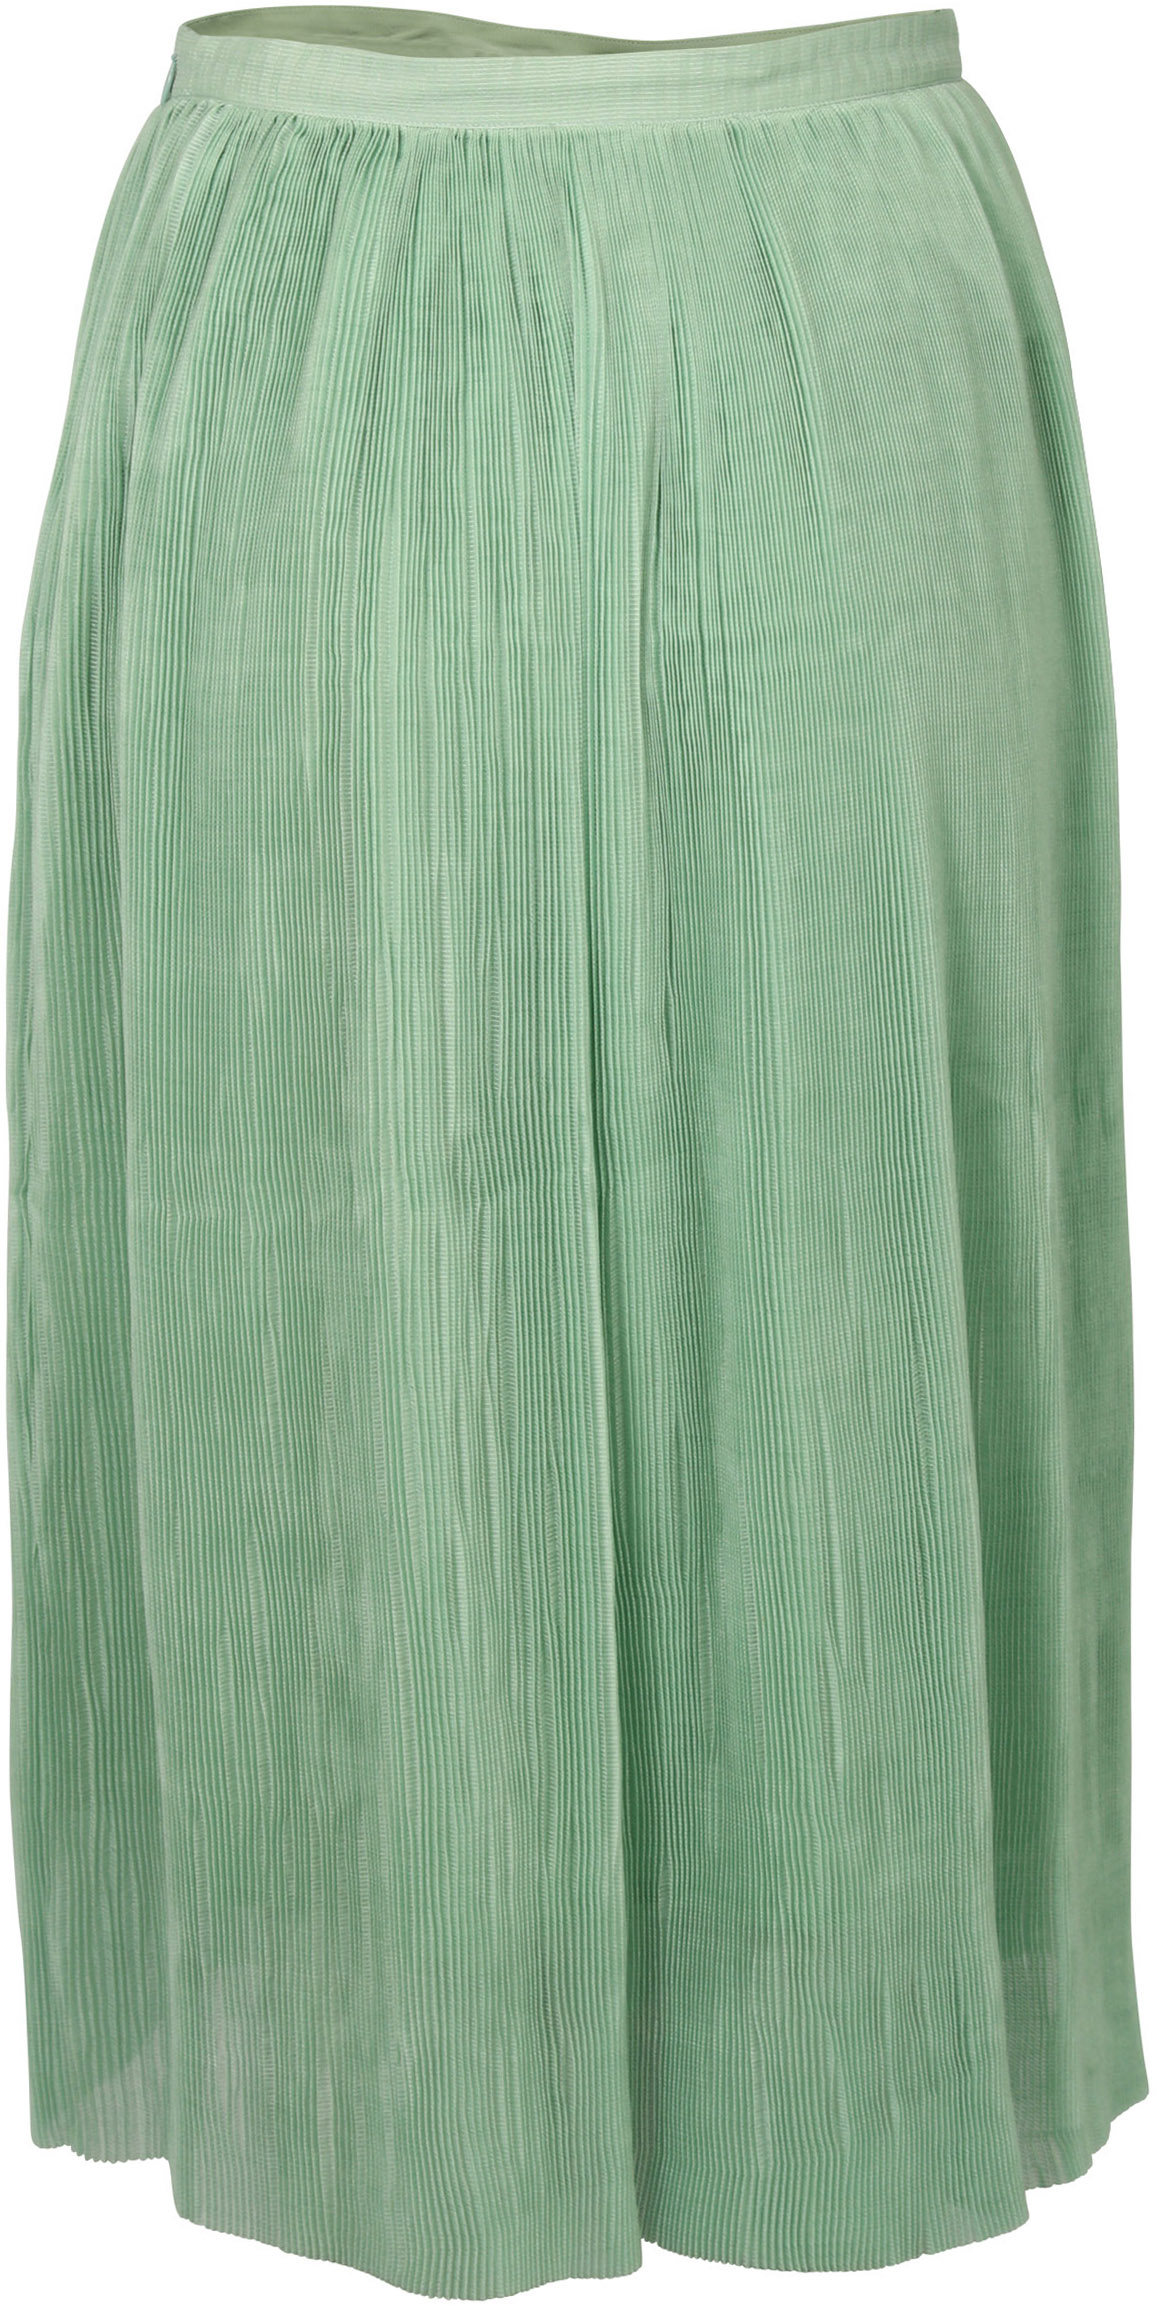 FWSS Skirt Thi Jade Green L